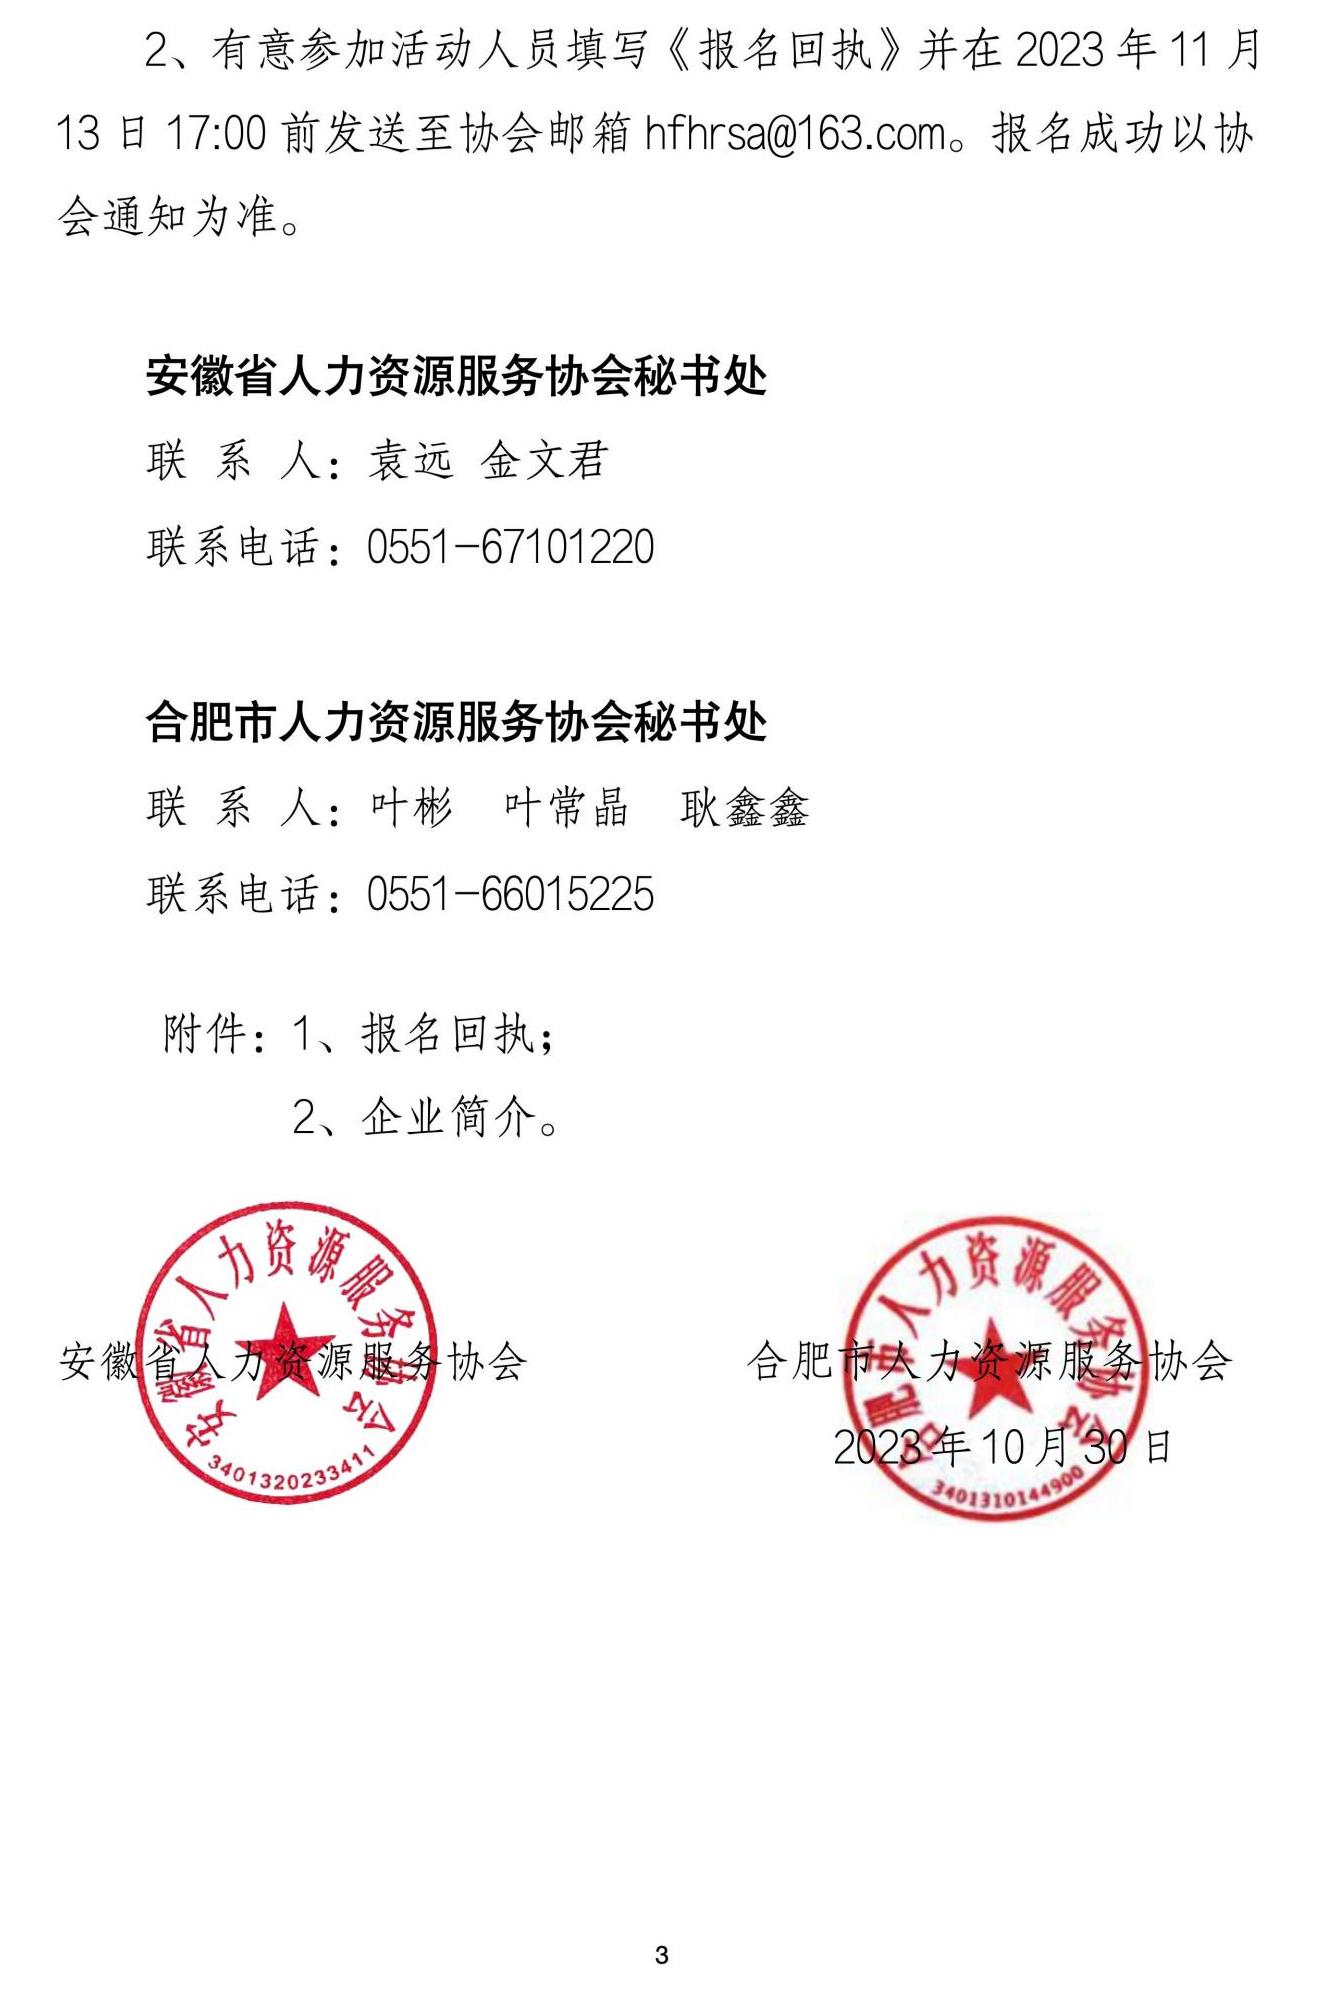 关于开展广东游学营的通知（省市协会联合）  11.21-22_02.jpg